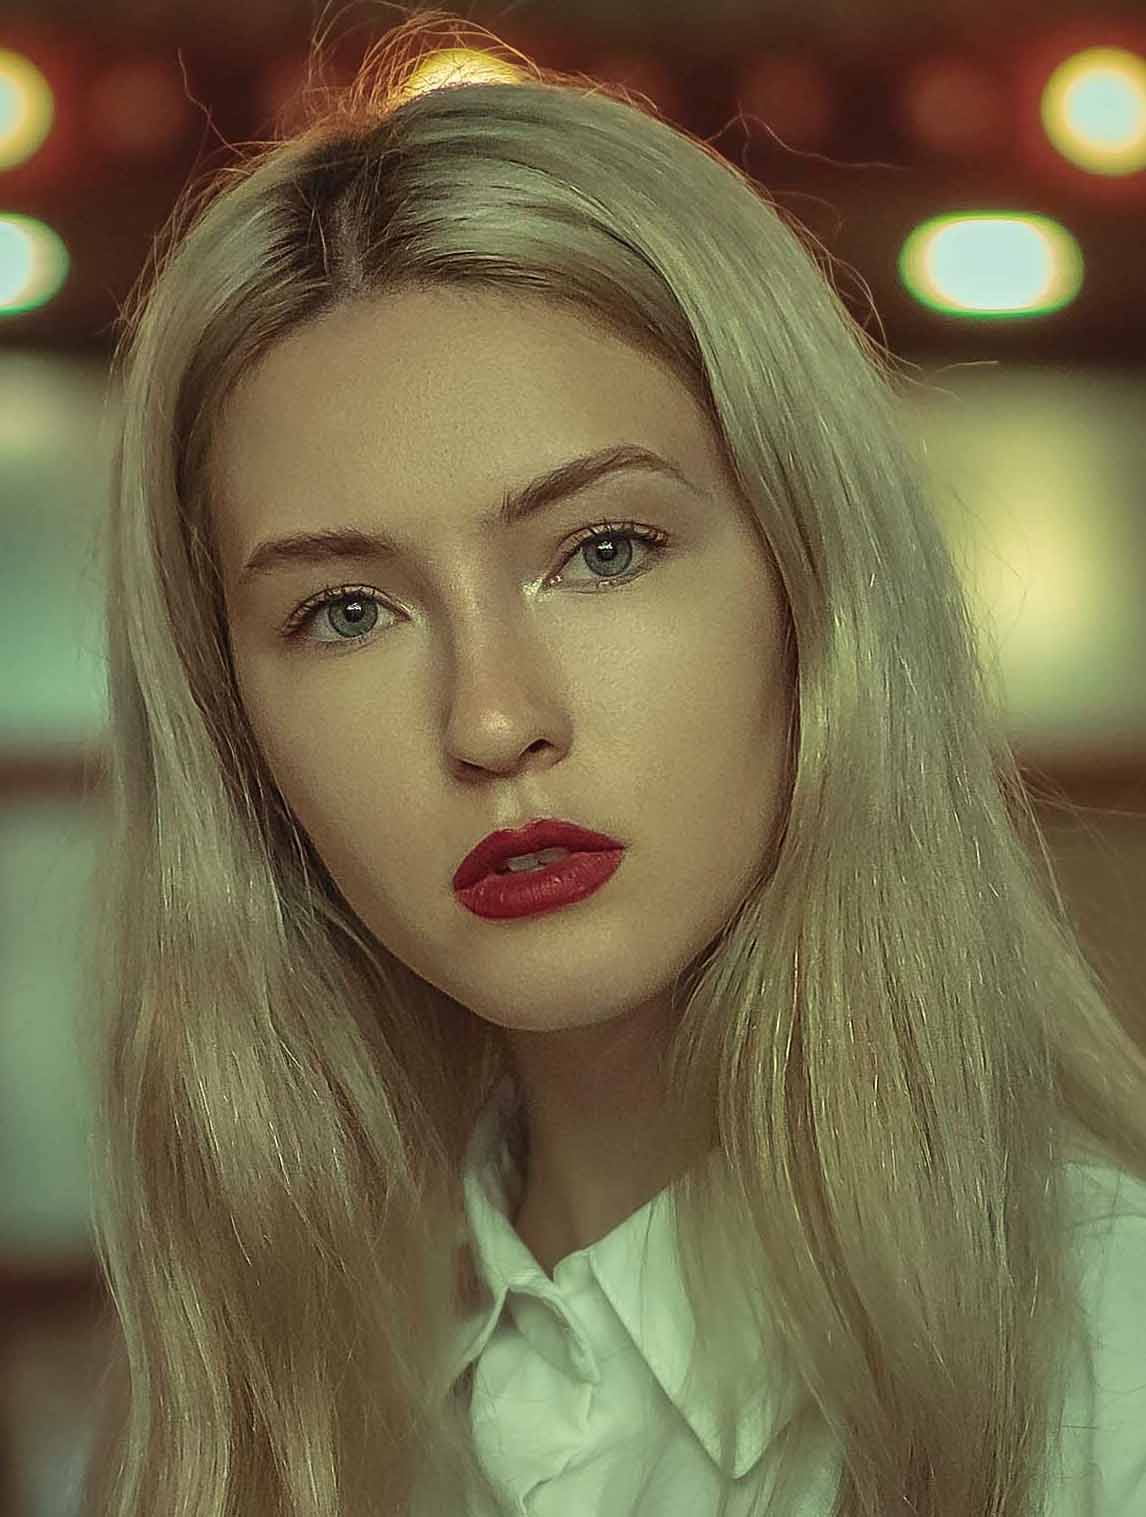 Polina K